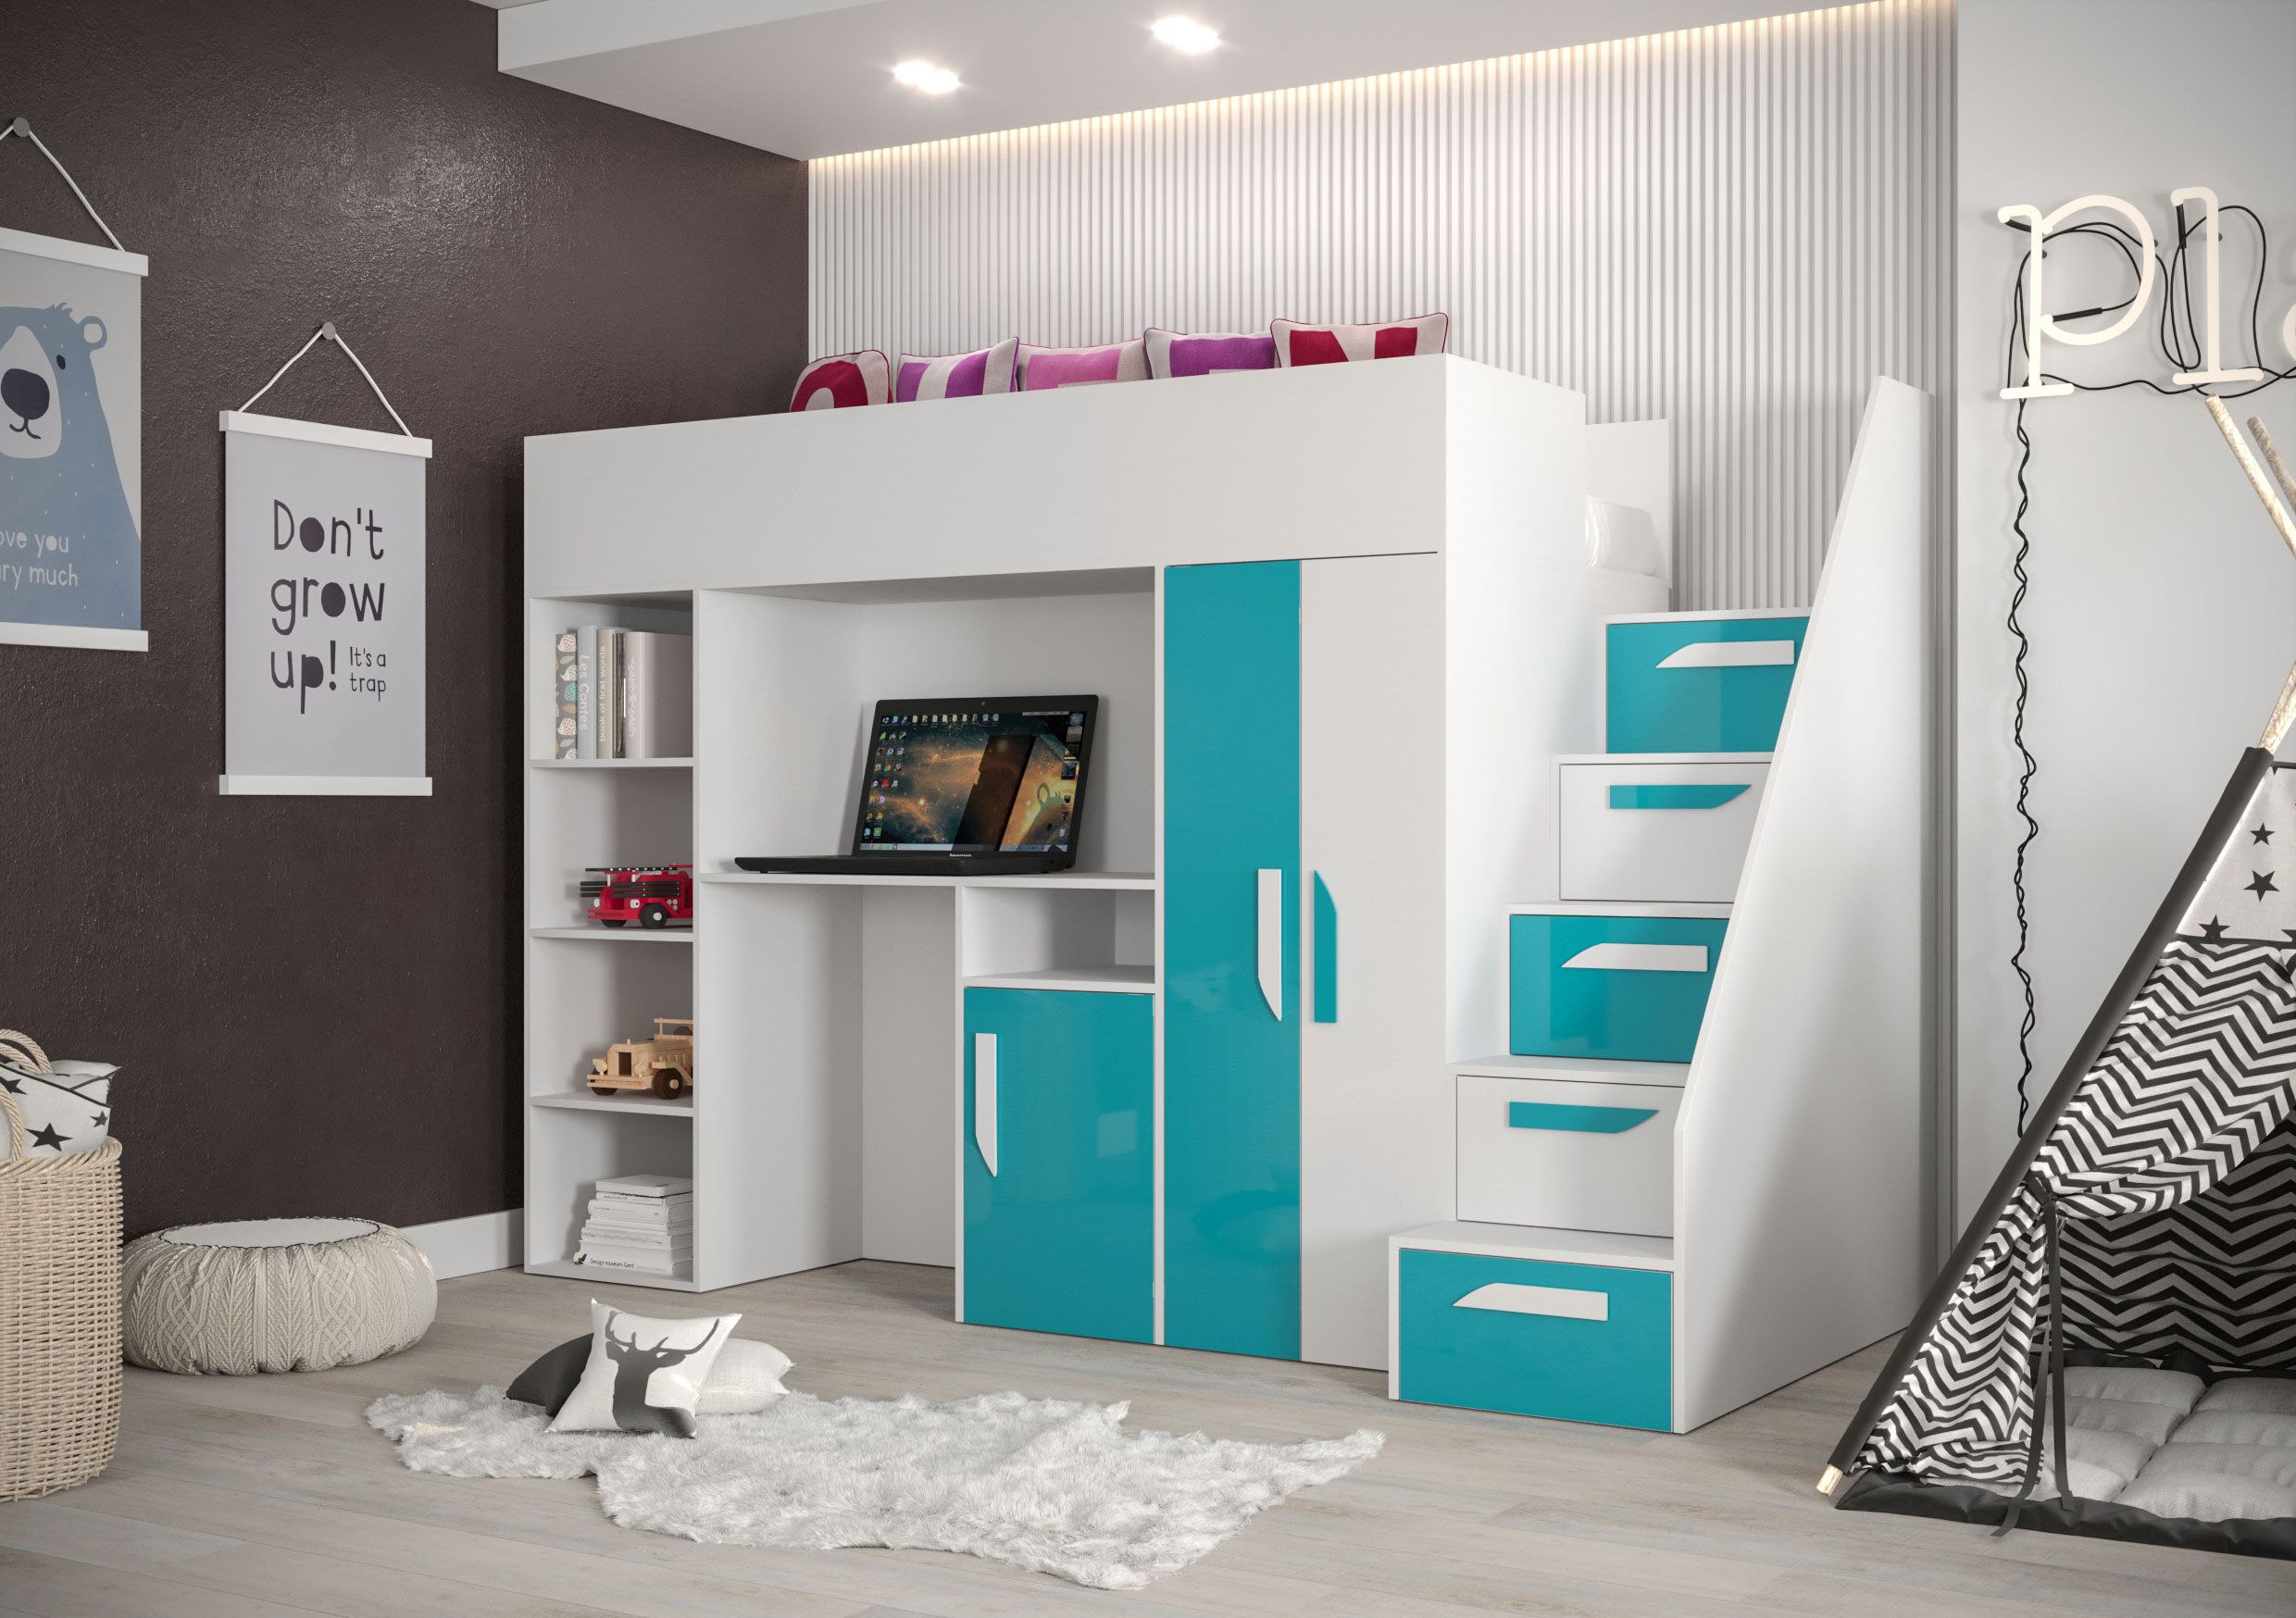 Lit fonctionnel / lit d'enfant / lit surélevé avec espace de rangement et bureau Jura 16, couleur : blanc / turquoise - dimensions : 165 x 247 x 120 cm (h x l x p)